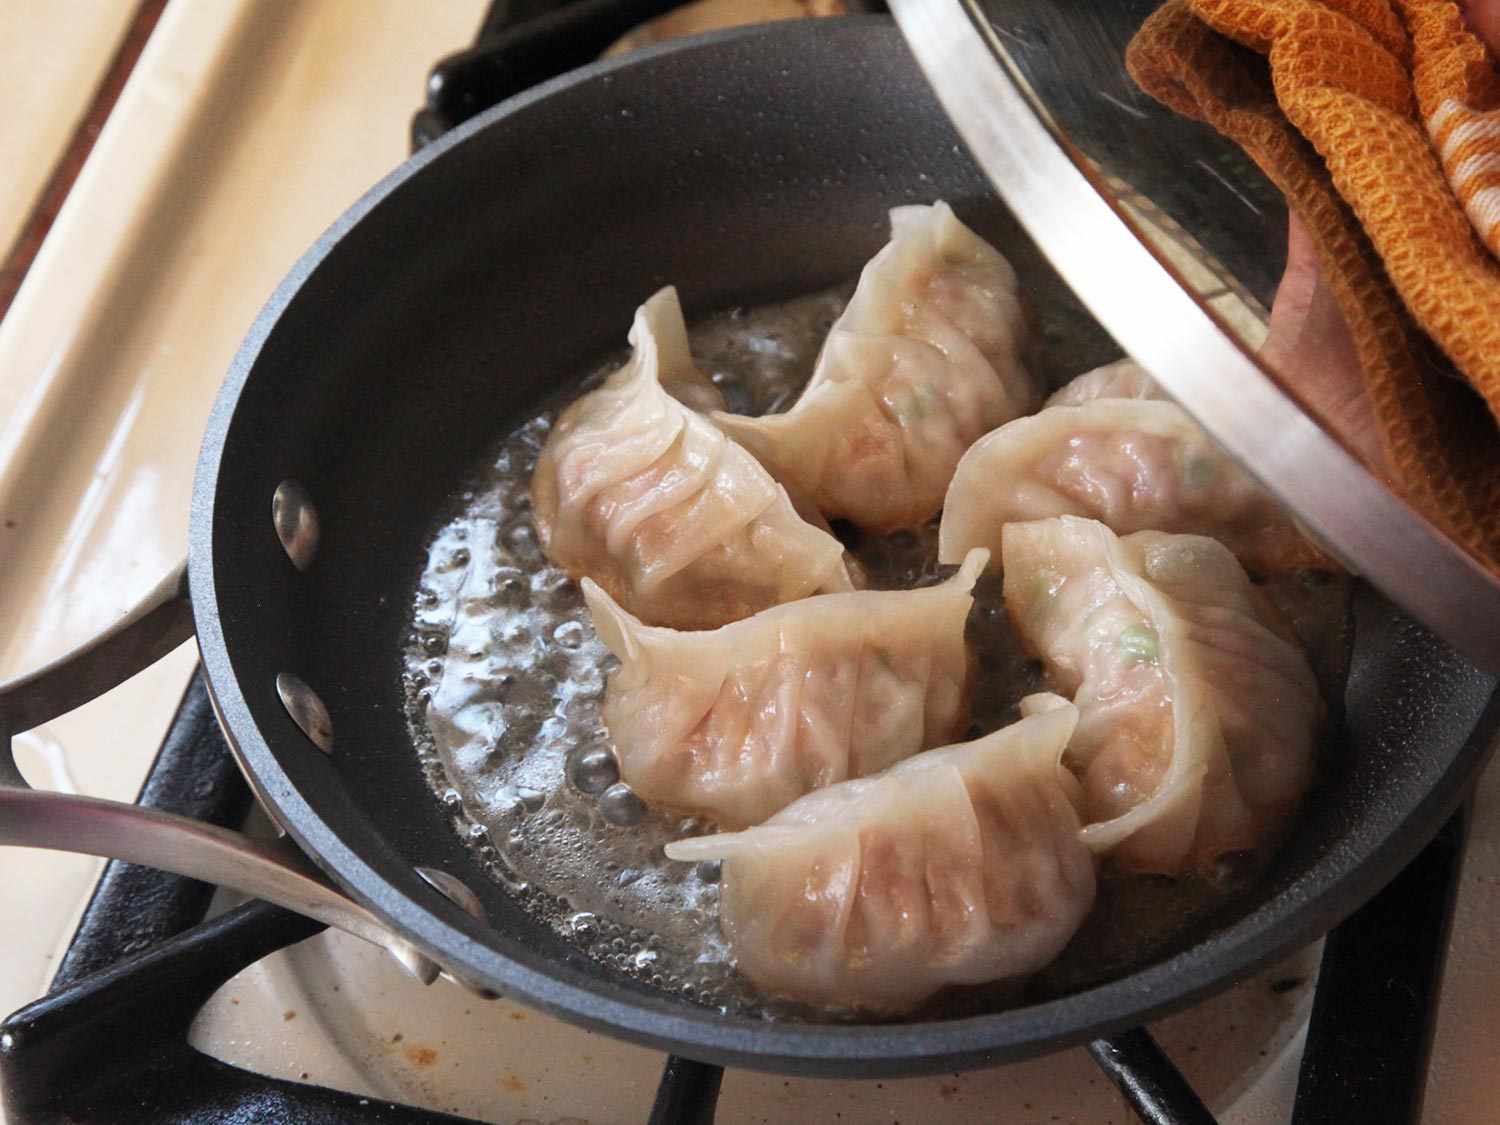 打开一锅清蒸猪肉和卷心菜的锅盖。